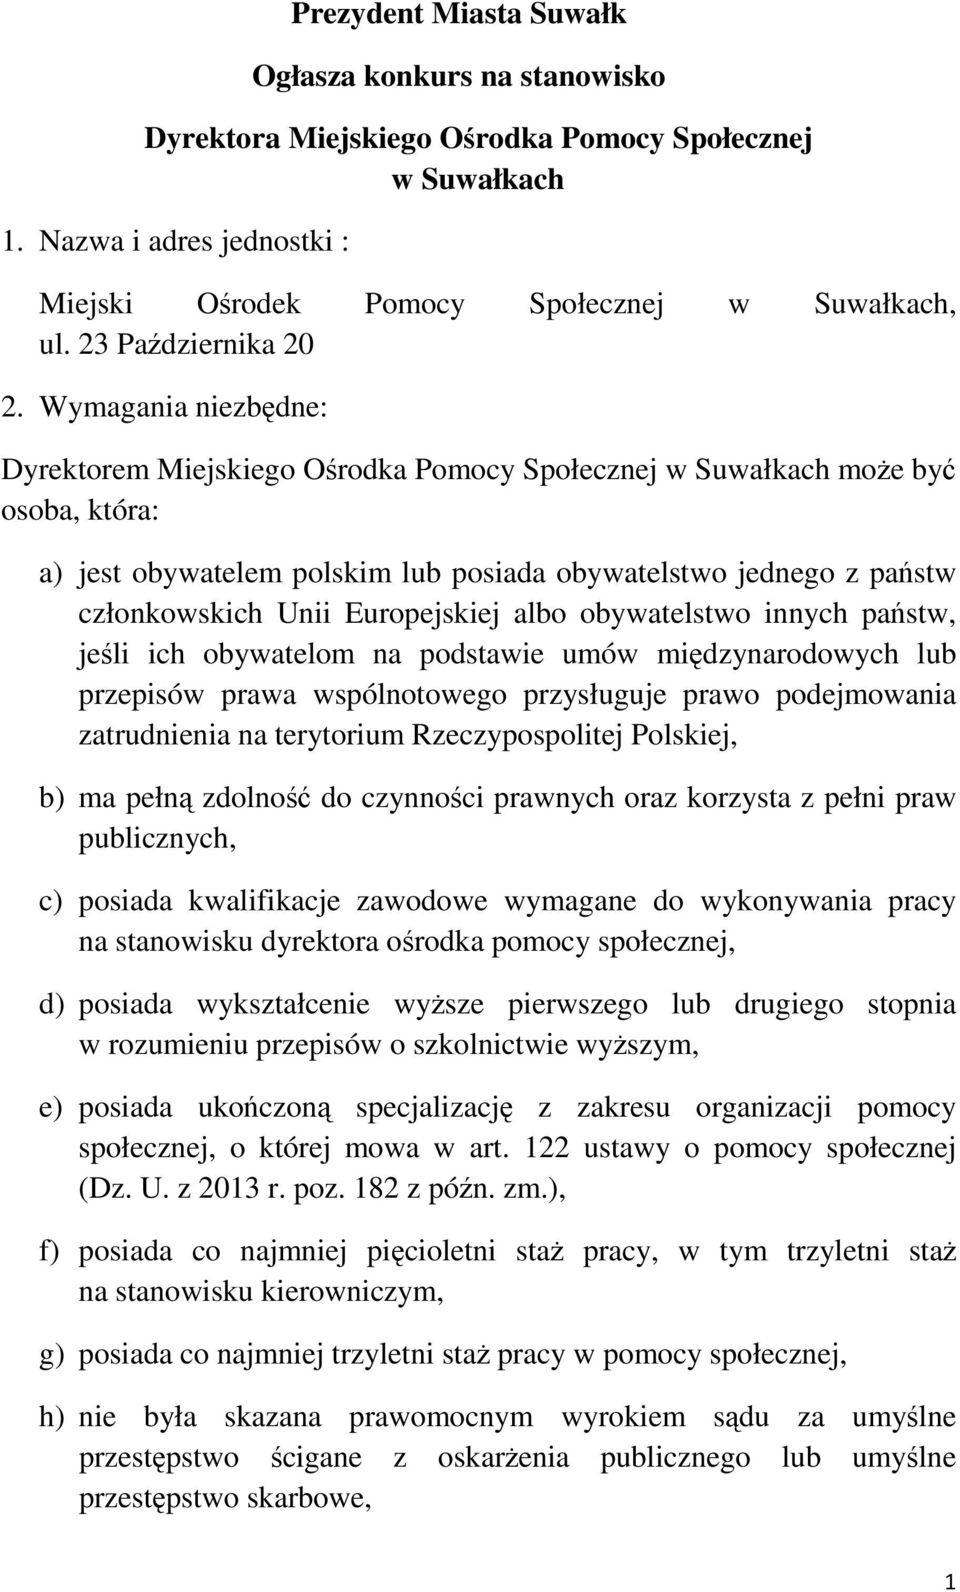 Wymagania niezbędne: Dyrektorem Miejskiego Ośrodka Pomocy Społecznej w Suwałkach może być osoba, która: a) jest obywatelem polskim lub posiada obywatelstwo jednego z państw członkowskich Unii